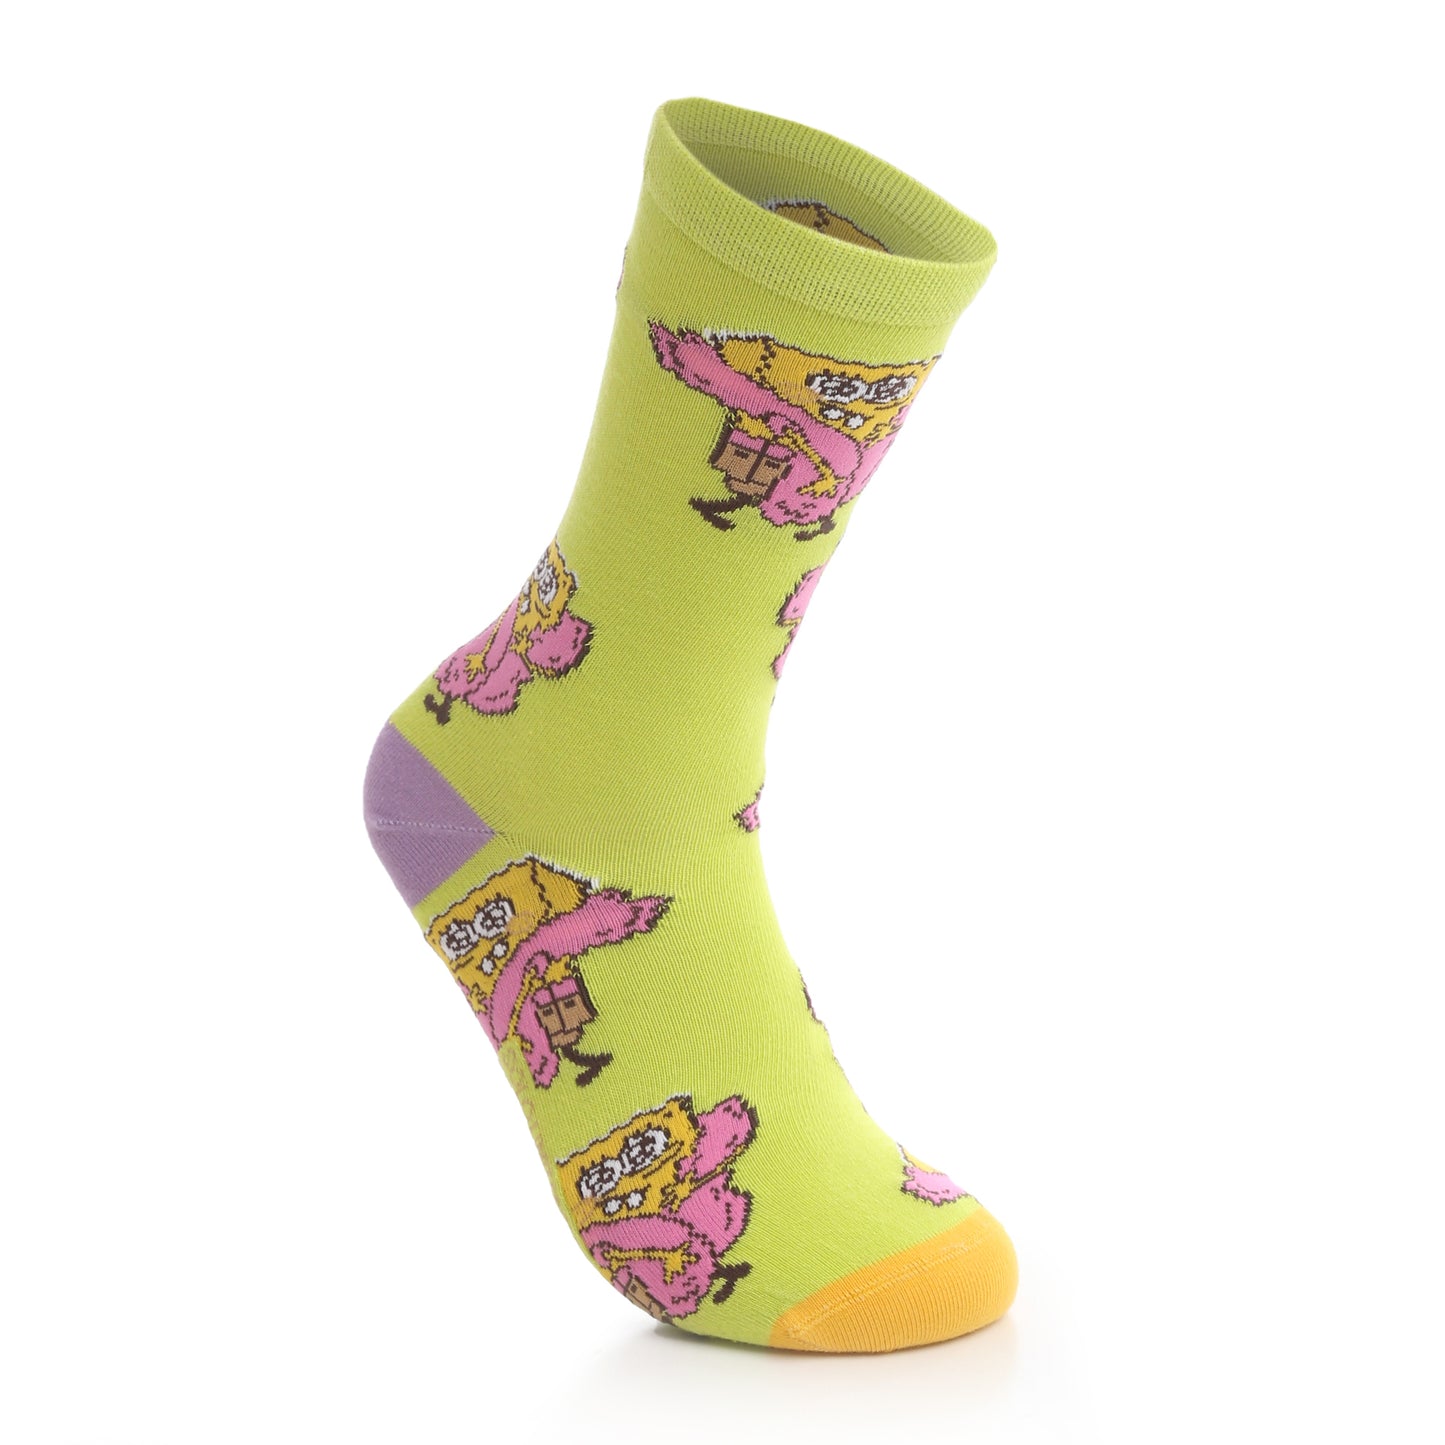 Cute Spongebob Socks